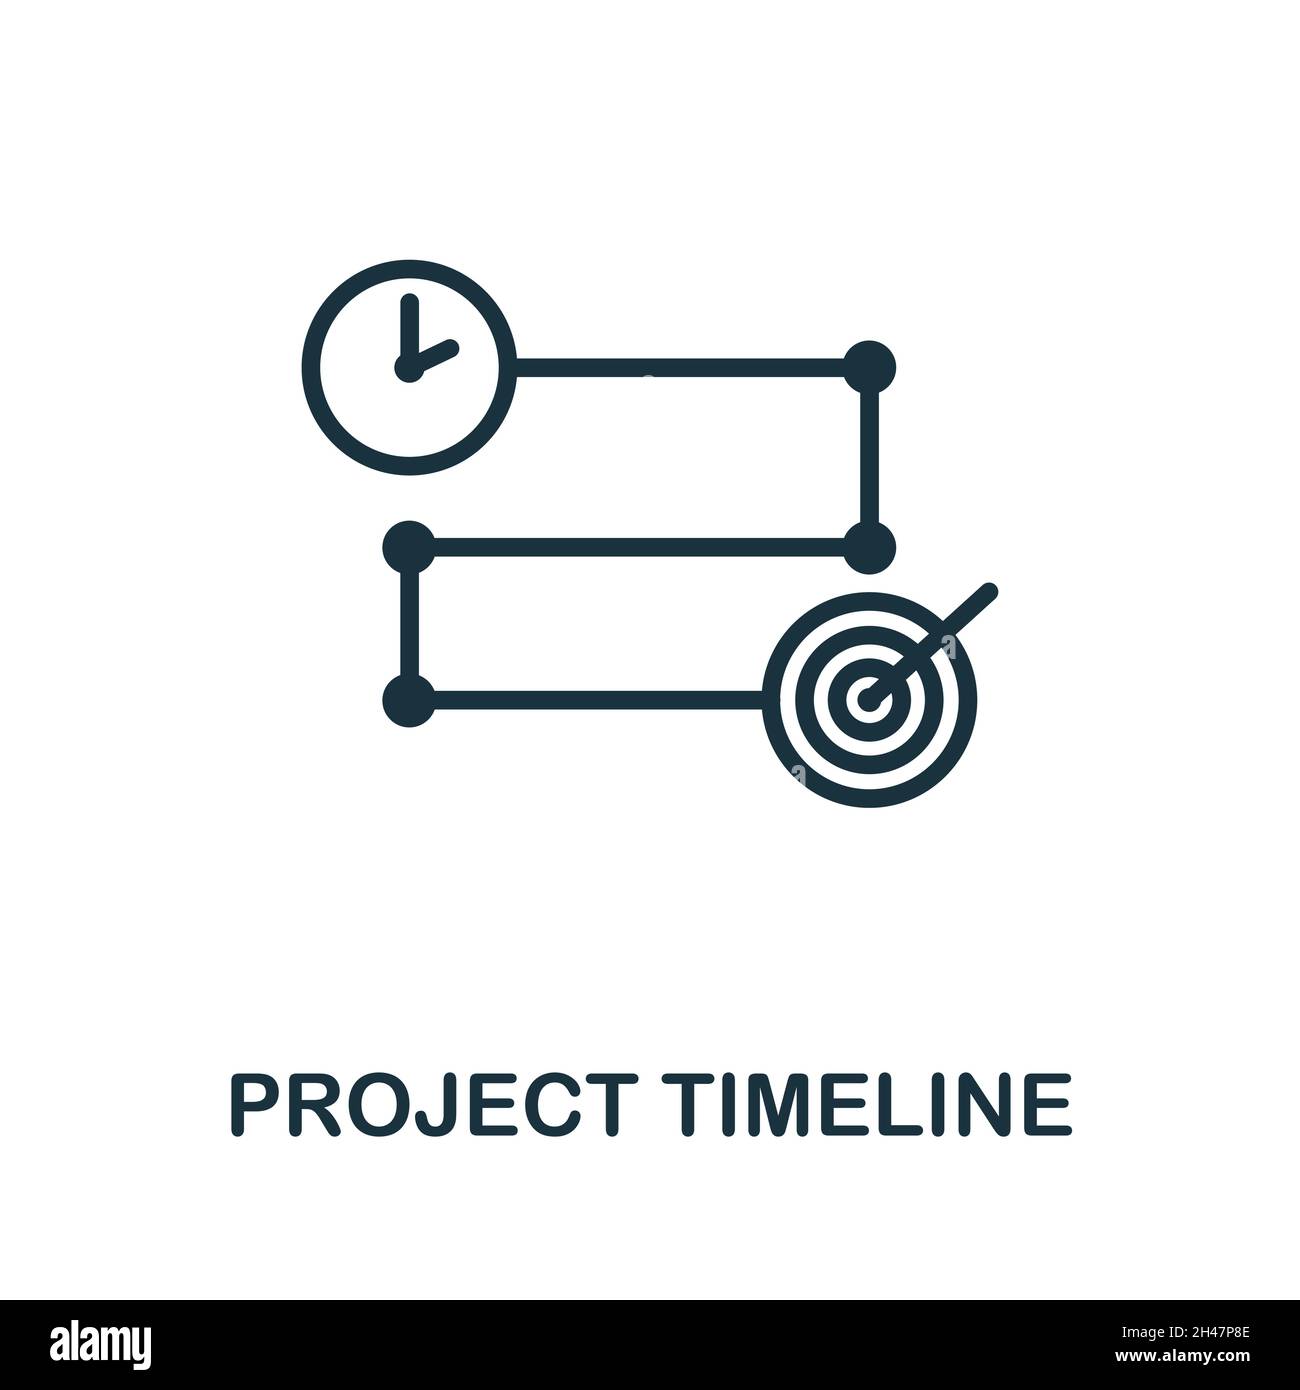 Projektzeitplansymbol. Monochromes Schild aus der Projektentwicklungskollektion. Creative Project Timeline Icon Illustration für Web-Design, Infografiken Stock Vektor